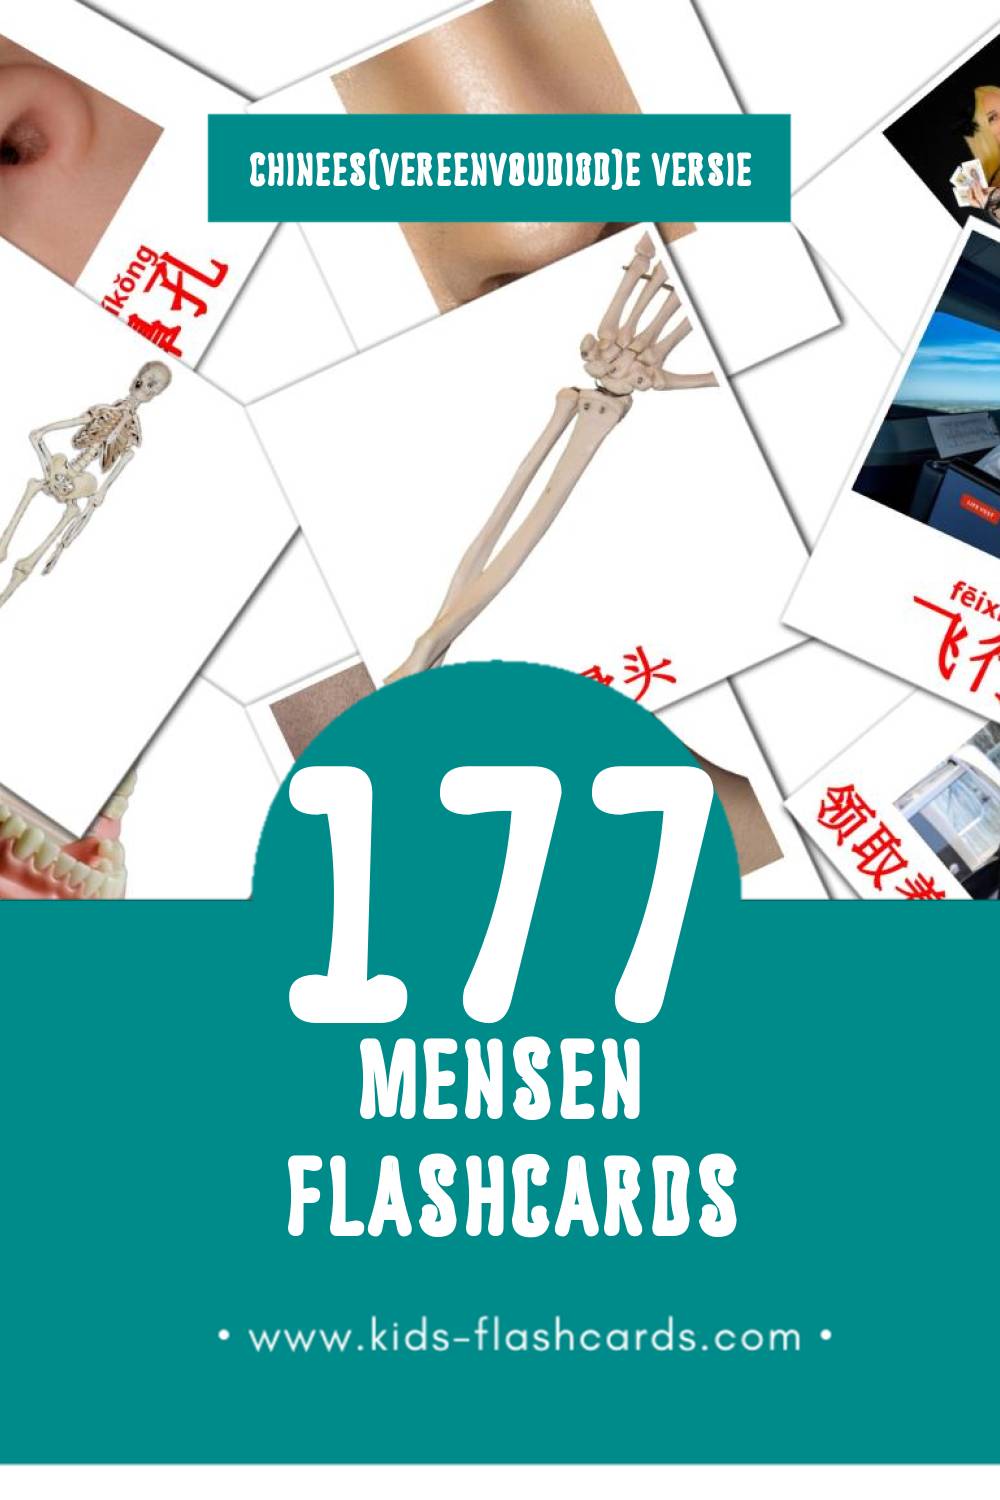 Visuele 人们 Flashcards voor Kleuters (177 kaarten in het Chinees(vereenvoudigd))